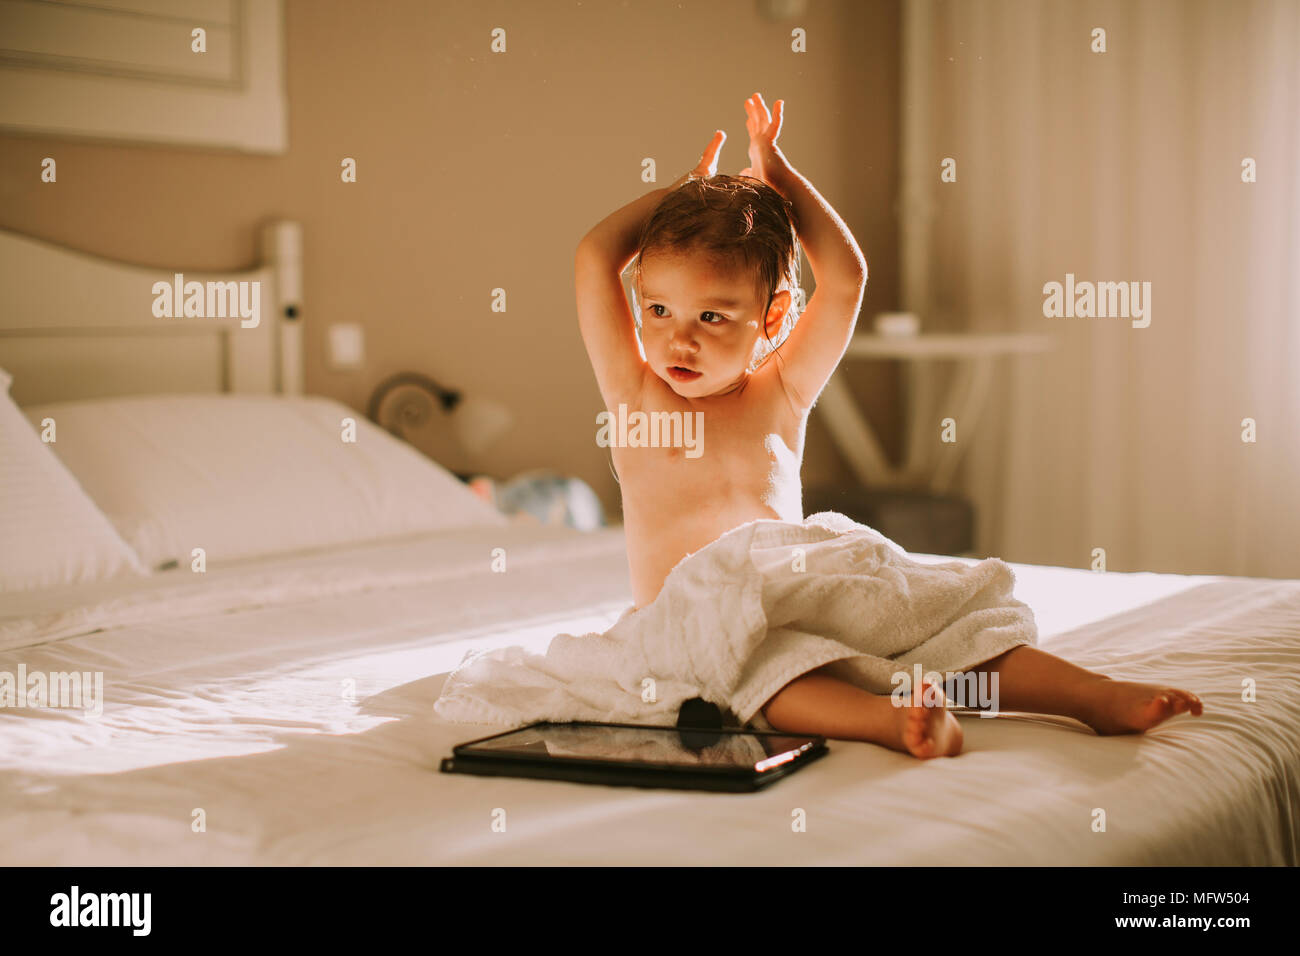 Ricci dolce bambina con un asciugamano sopra il suo corpo bagnato  ubicazione in una camera da letto dopo la doccia o vasca da bagno Foto  stock - Alamy